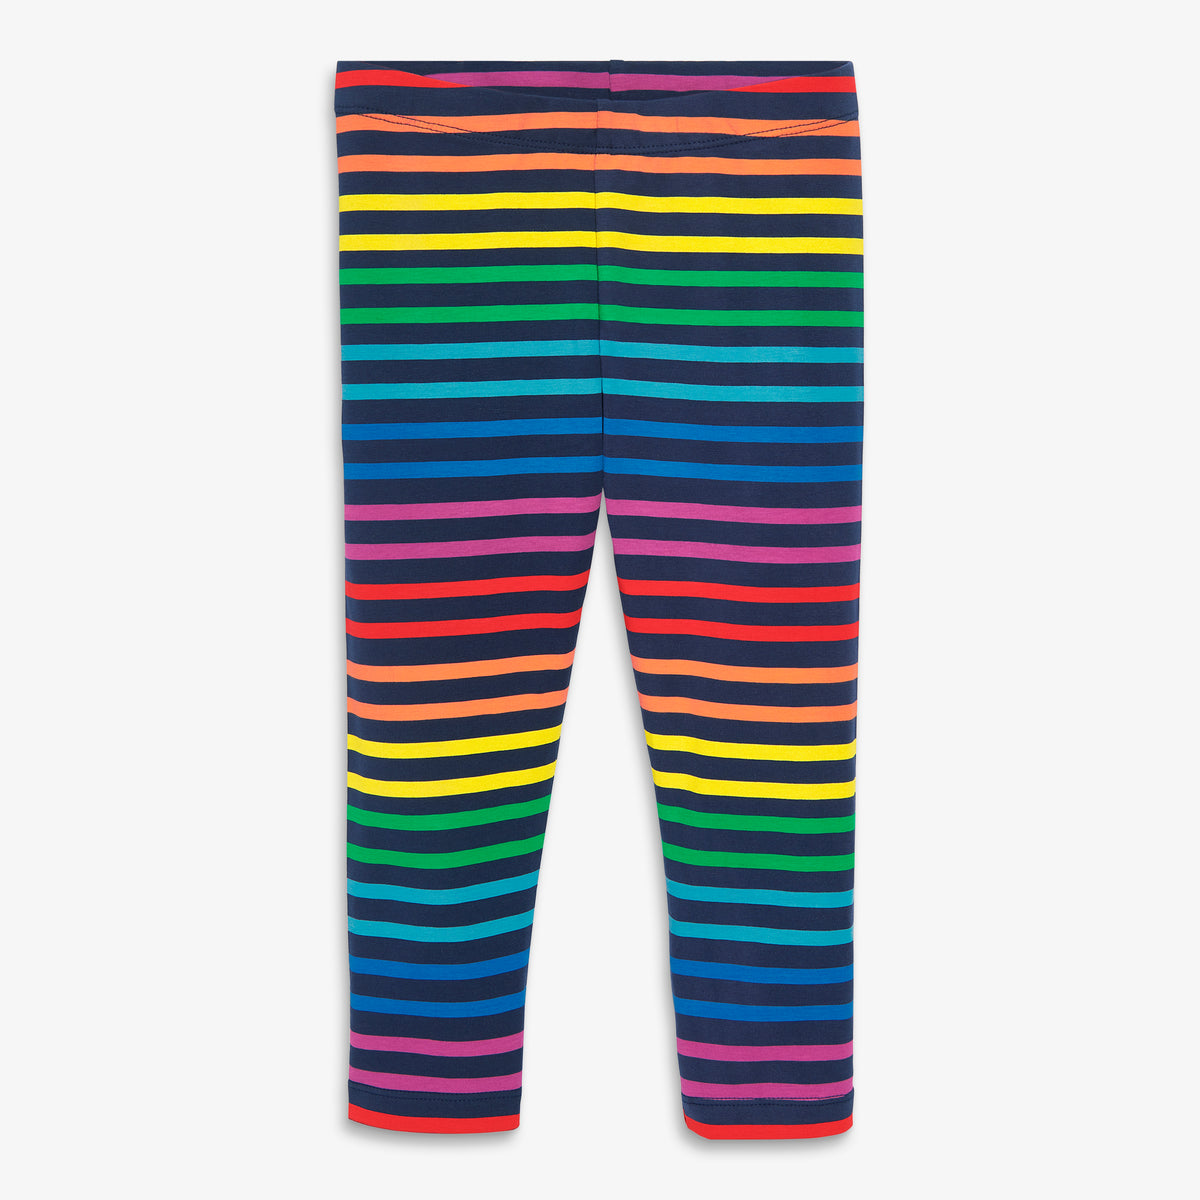 Capri legging in bright rainbow